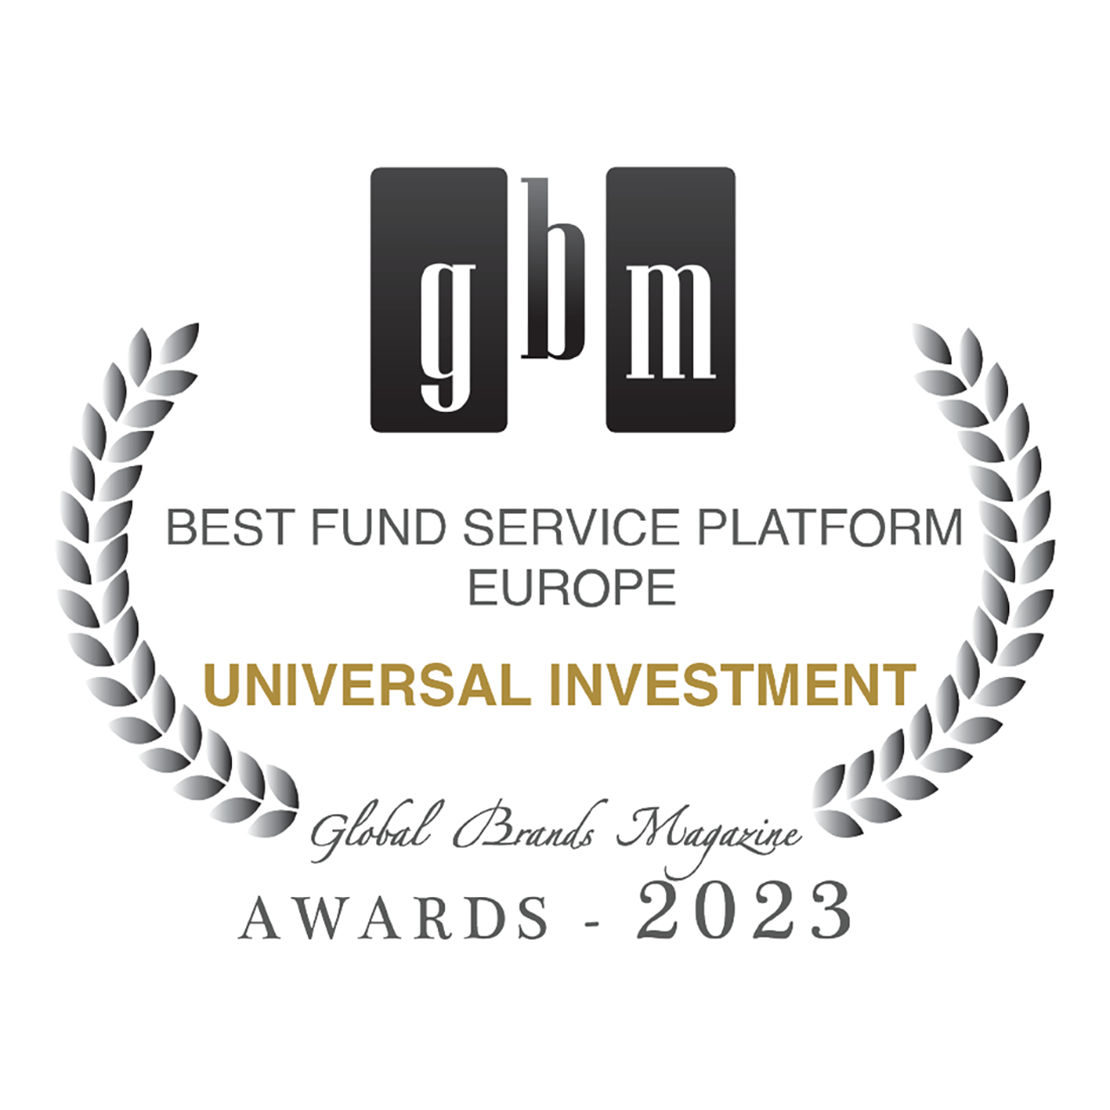 Best Fund Service Platform Europe Awards 2023